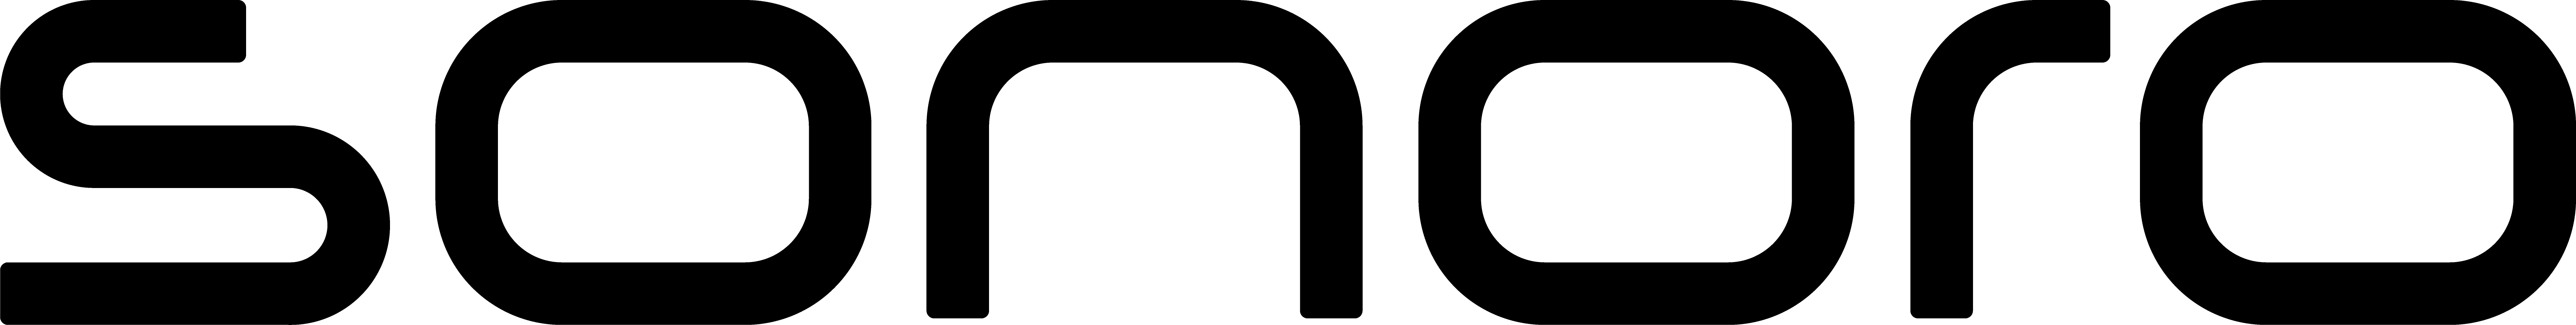 Das Logo von sonoro in schwarz